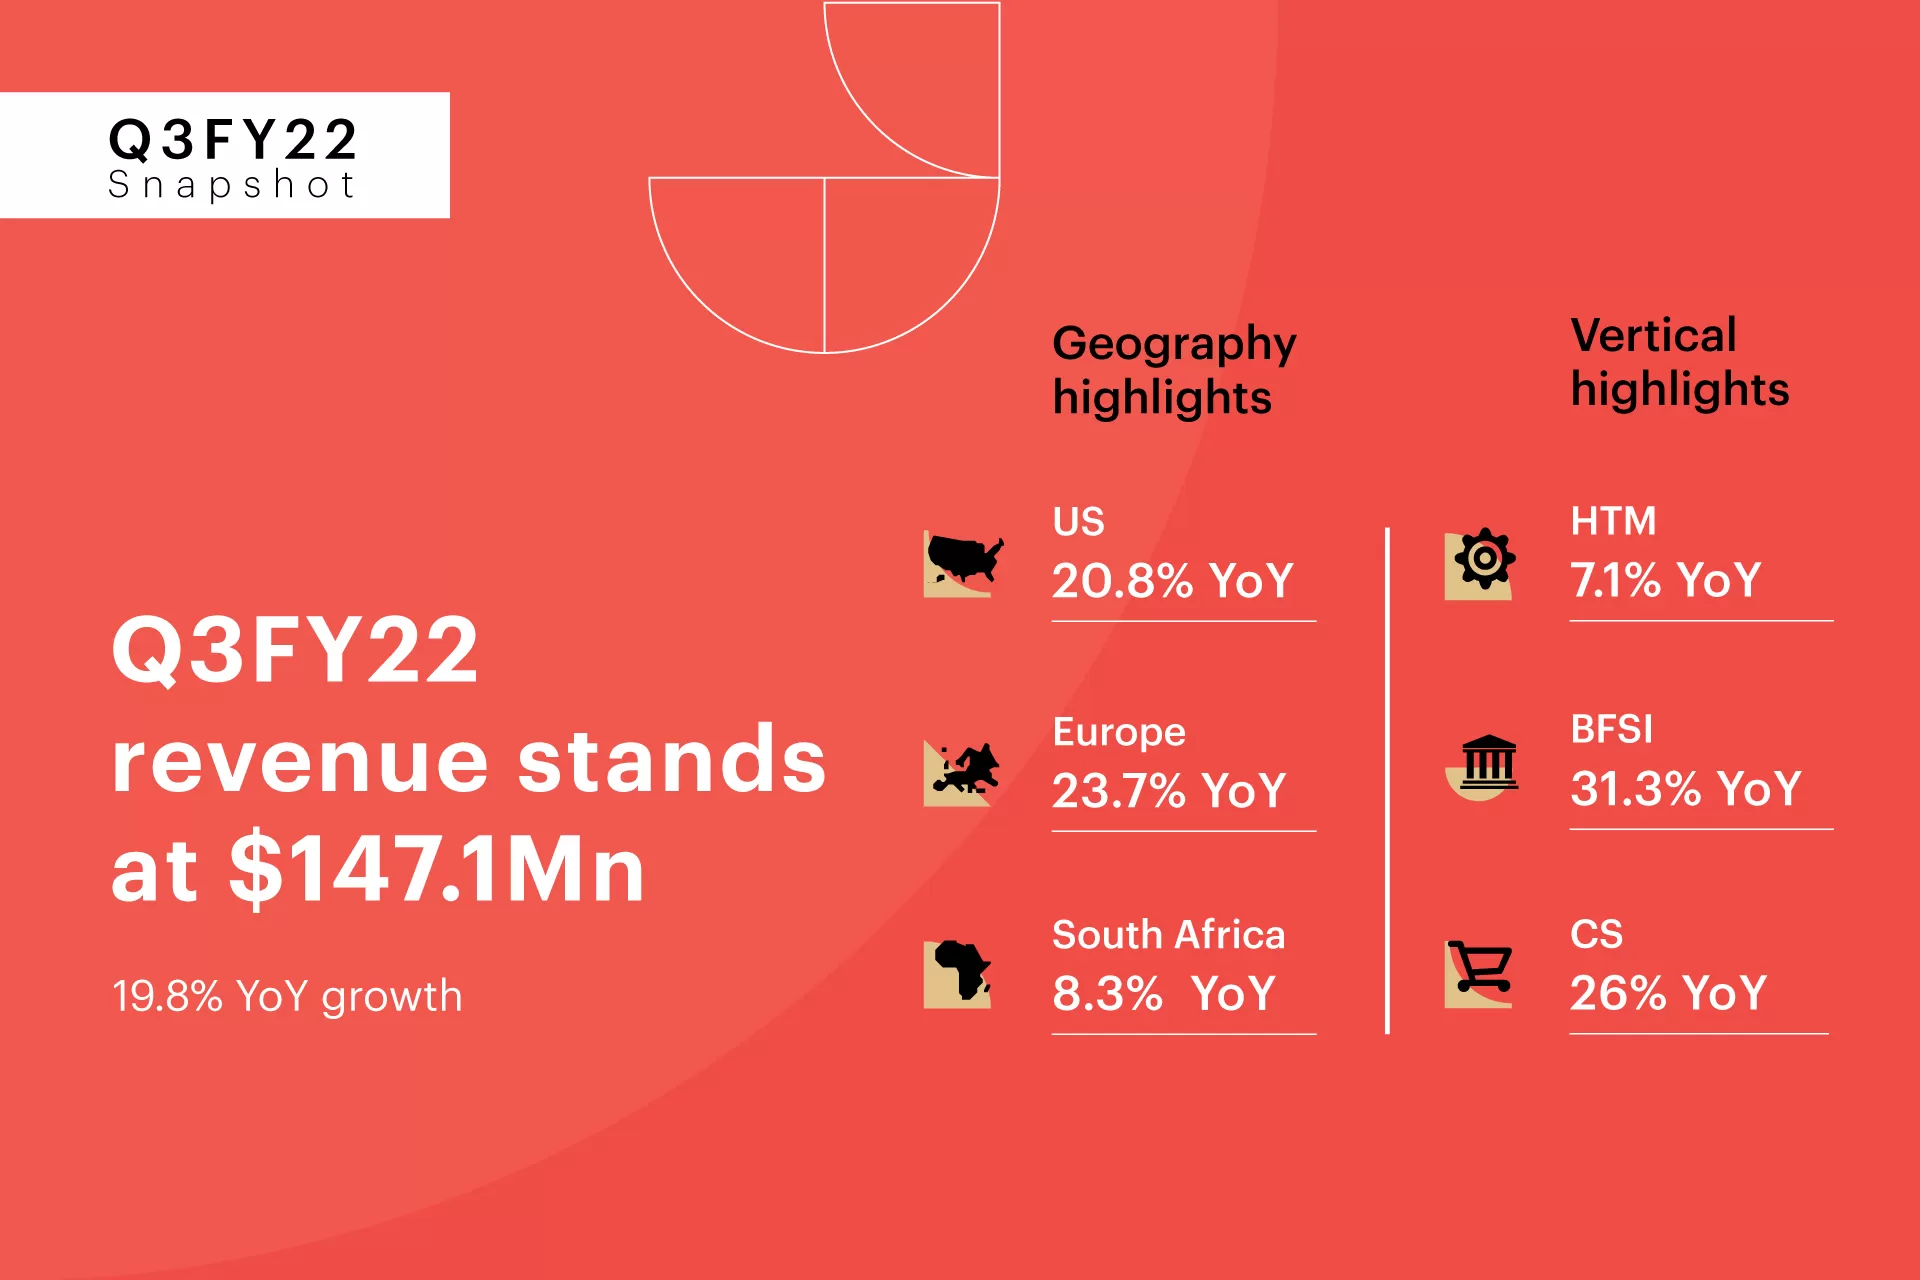 Zensar's Q3FY22 revenues register 19.8% YoY growth